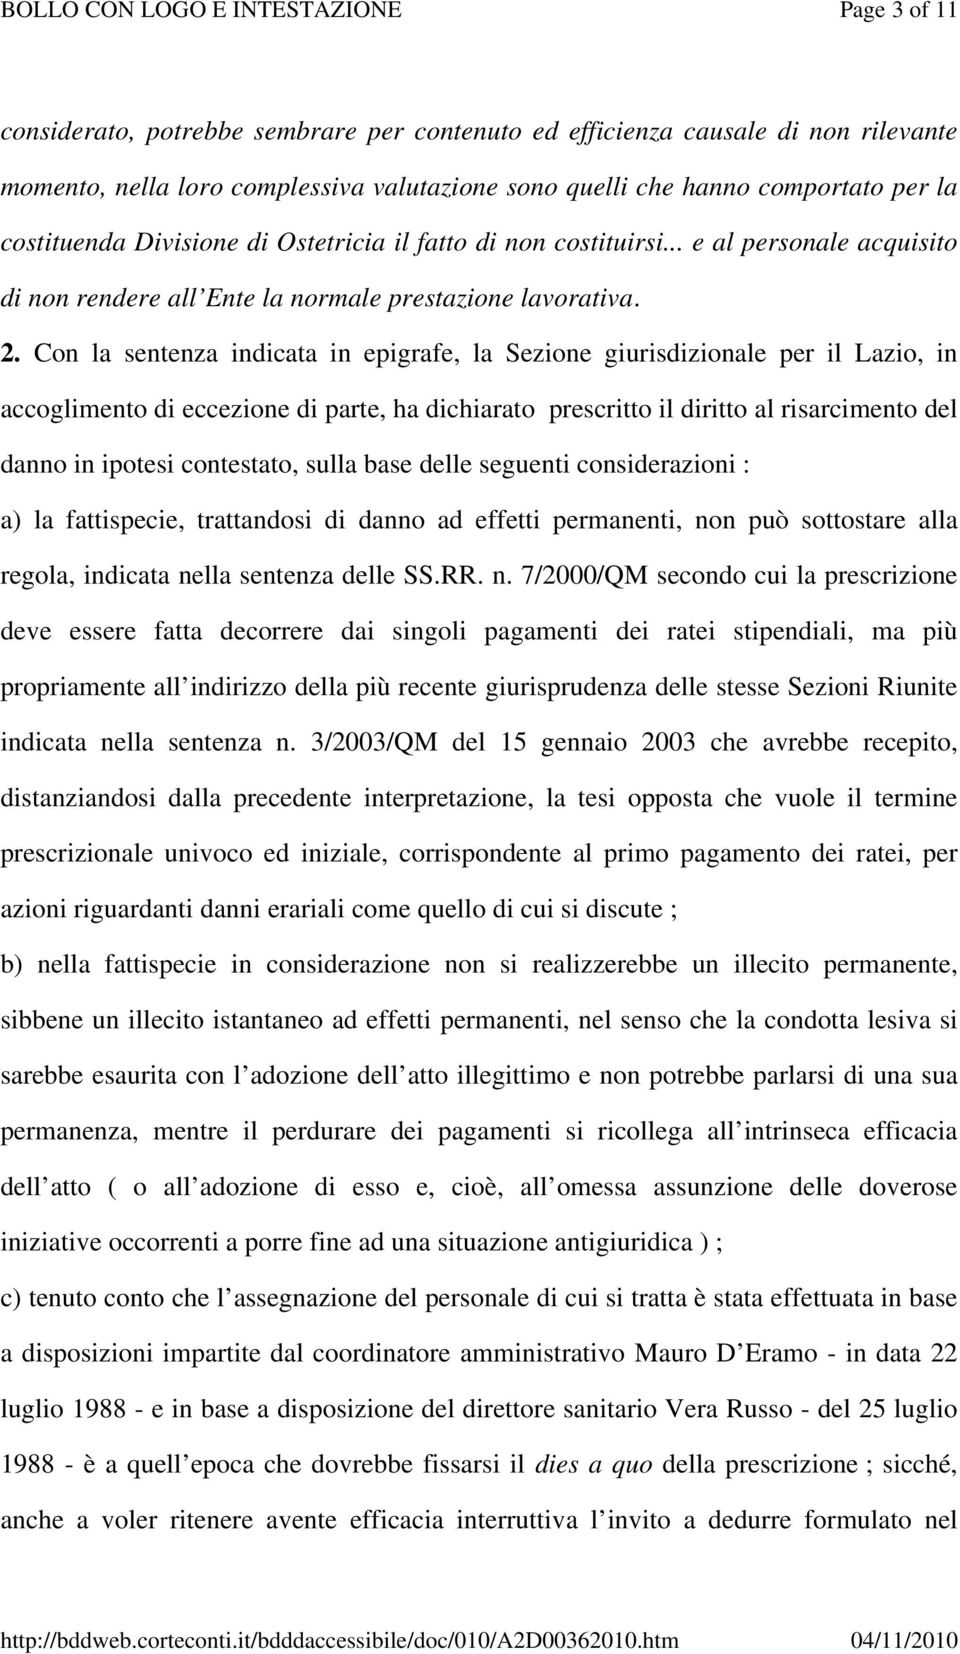 Con la sentenza indicata in epigrafe, la Sezione giurisdizionale per il Lazio, in accoglimento di eccezione di parte, ha dichiarato prescritto il diritto al risarcimento del danno in ipotesi